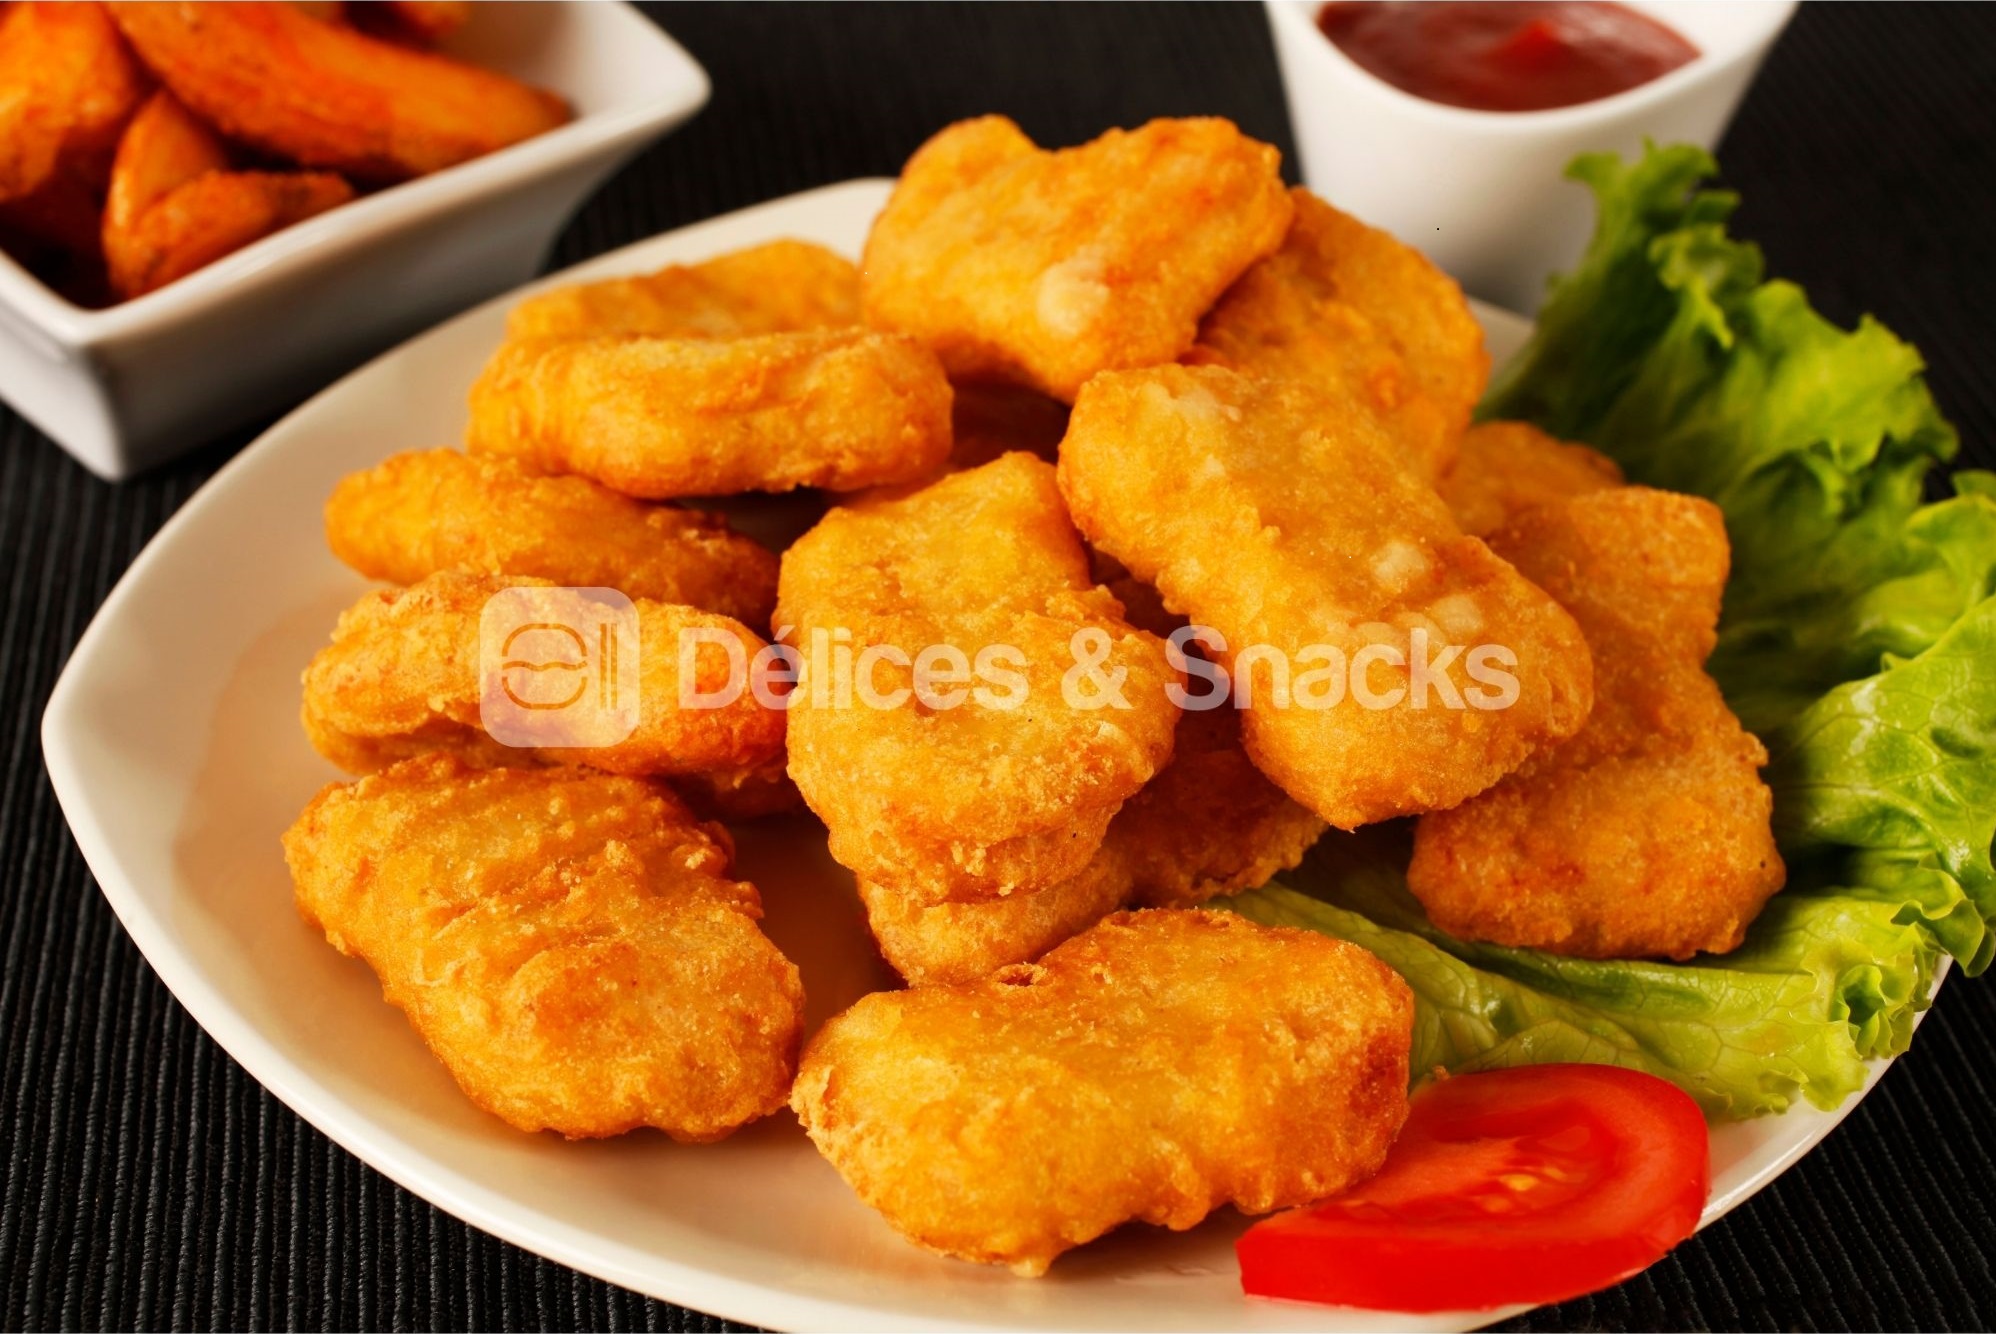 Nugget-aux-filets-de-poulet-cuits-premium-11020-LTH-Delices-Snacks-1